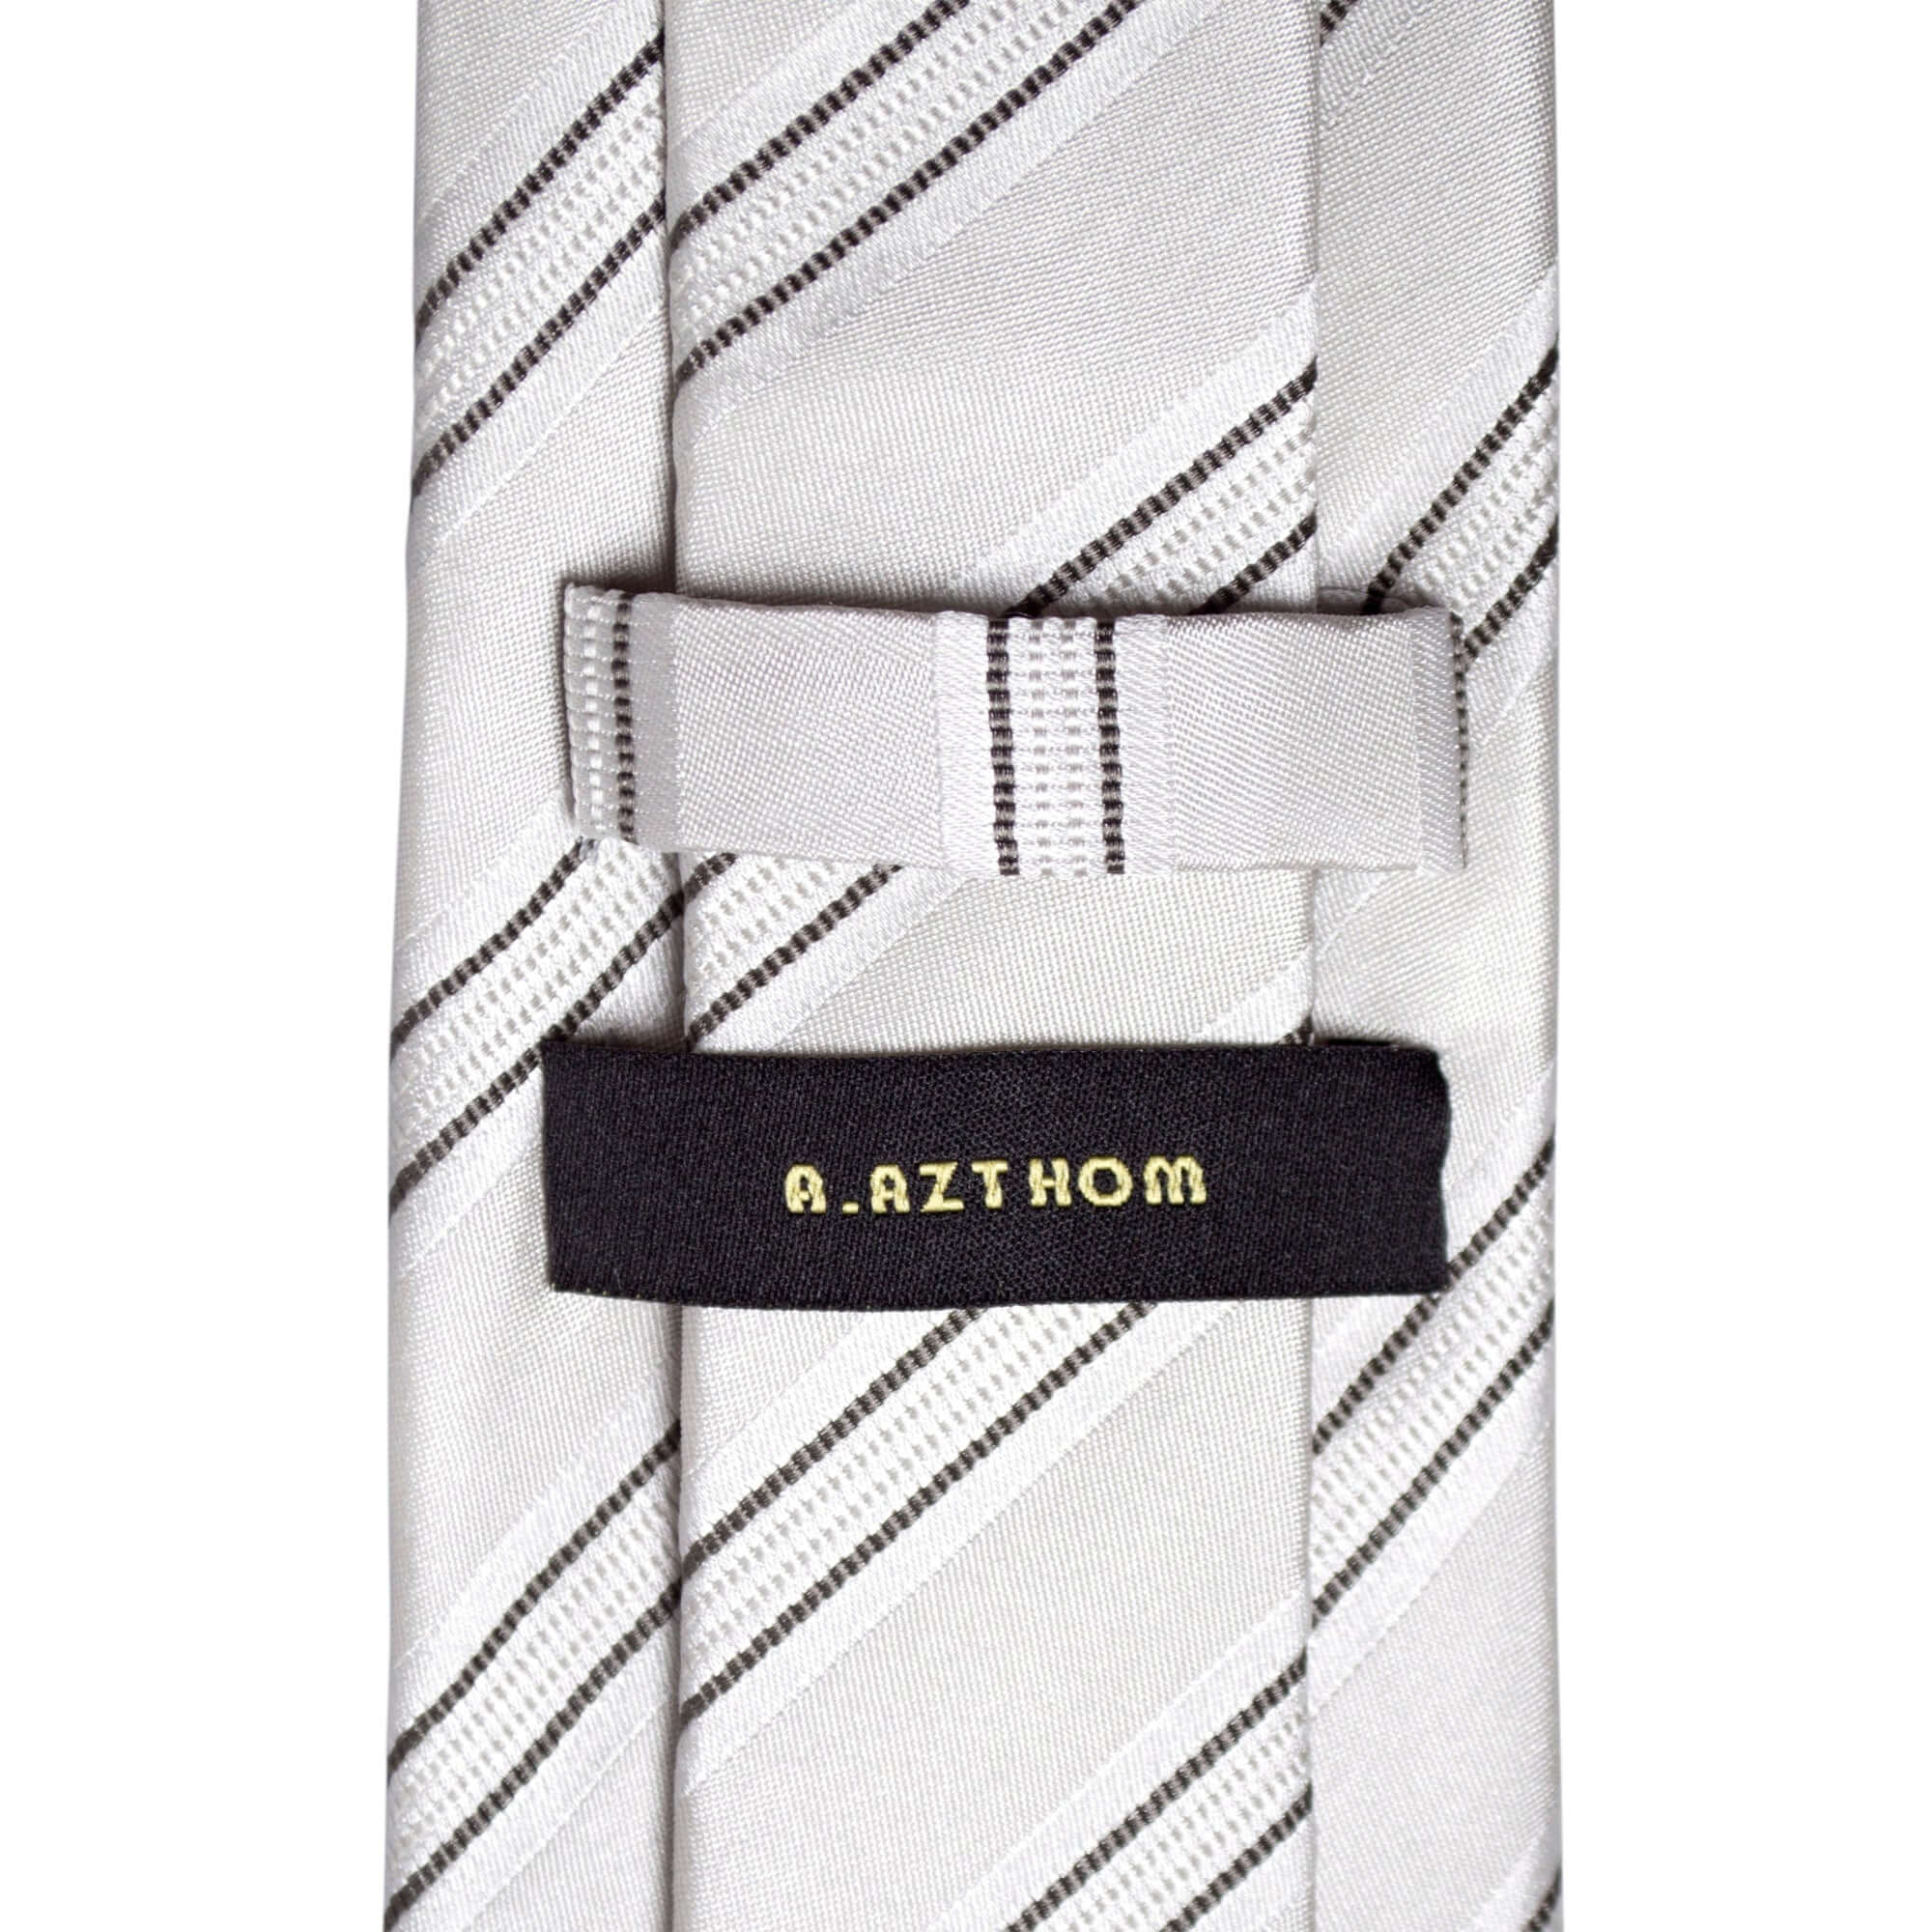 8cm Woven Striped Necktie in White M-Cufflinks.com.sg | Neckties.com.sg